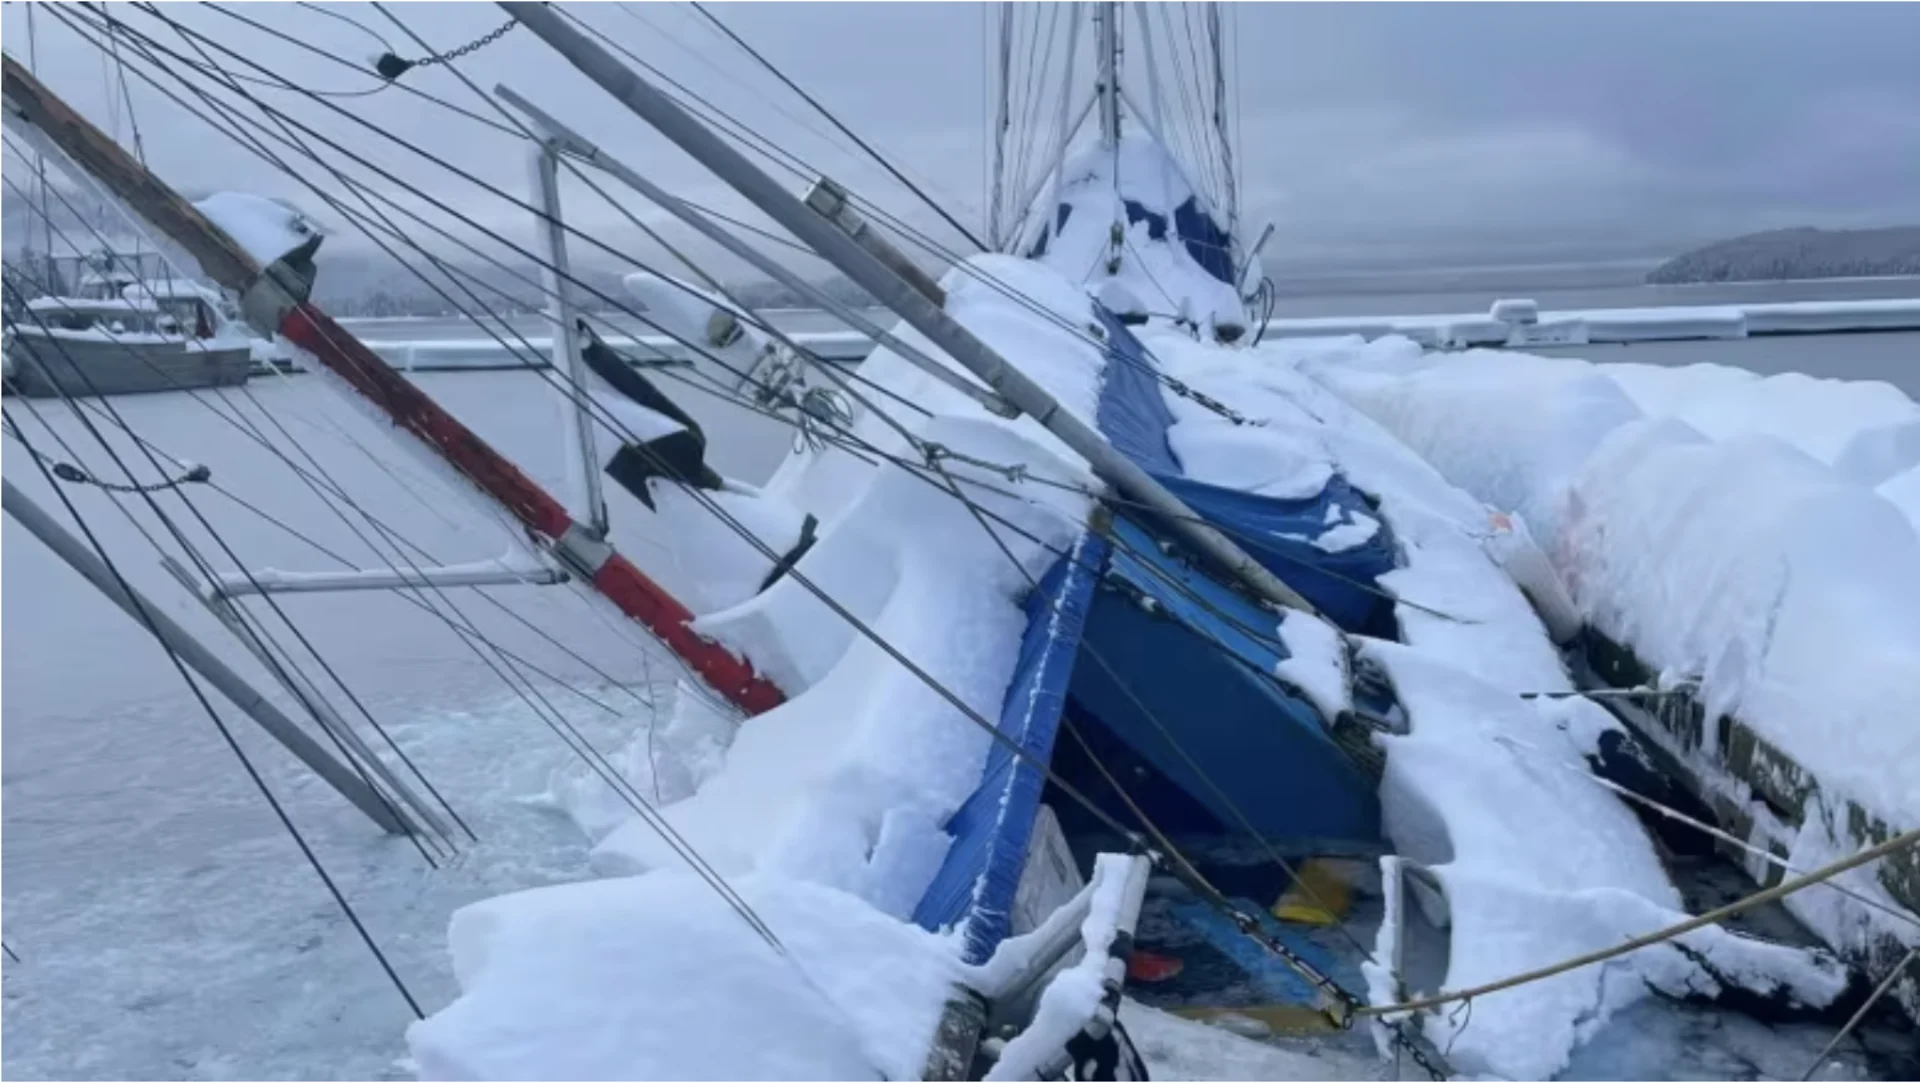 Heavy snowfall in Juneau, Alaska, sinks boats in harbour